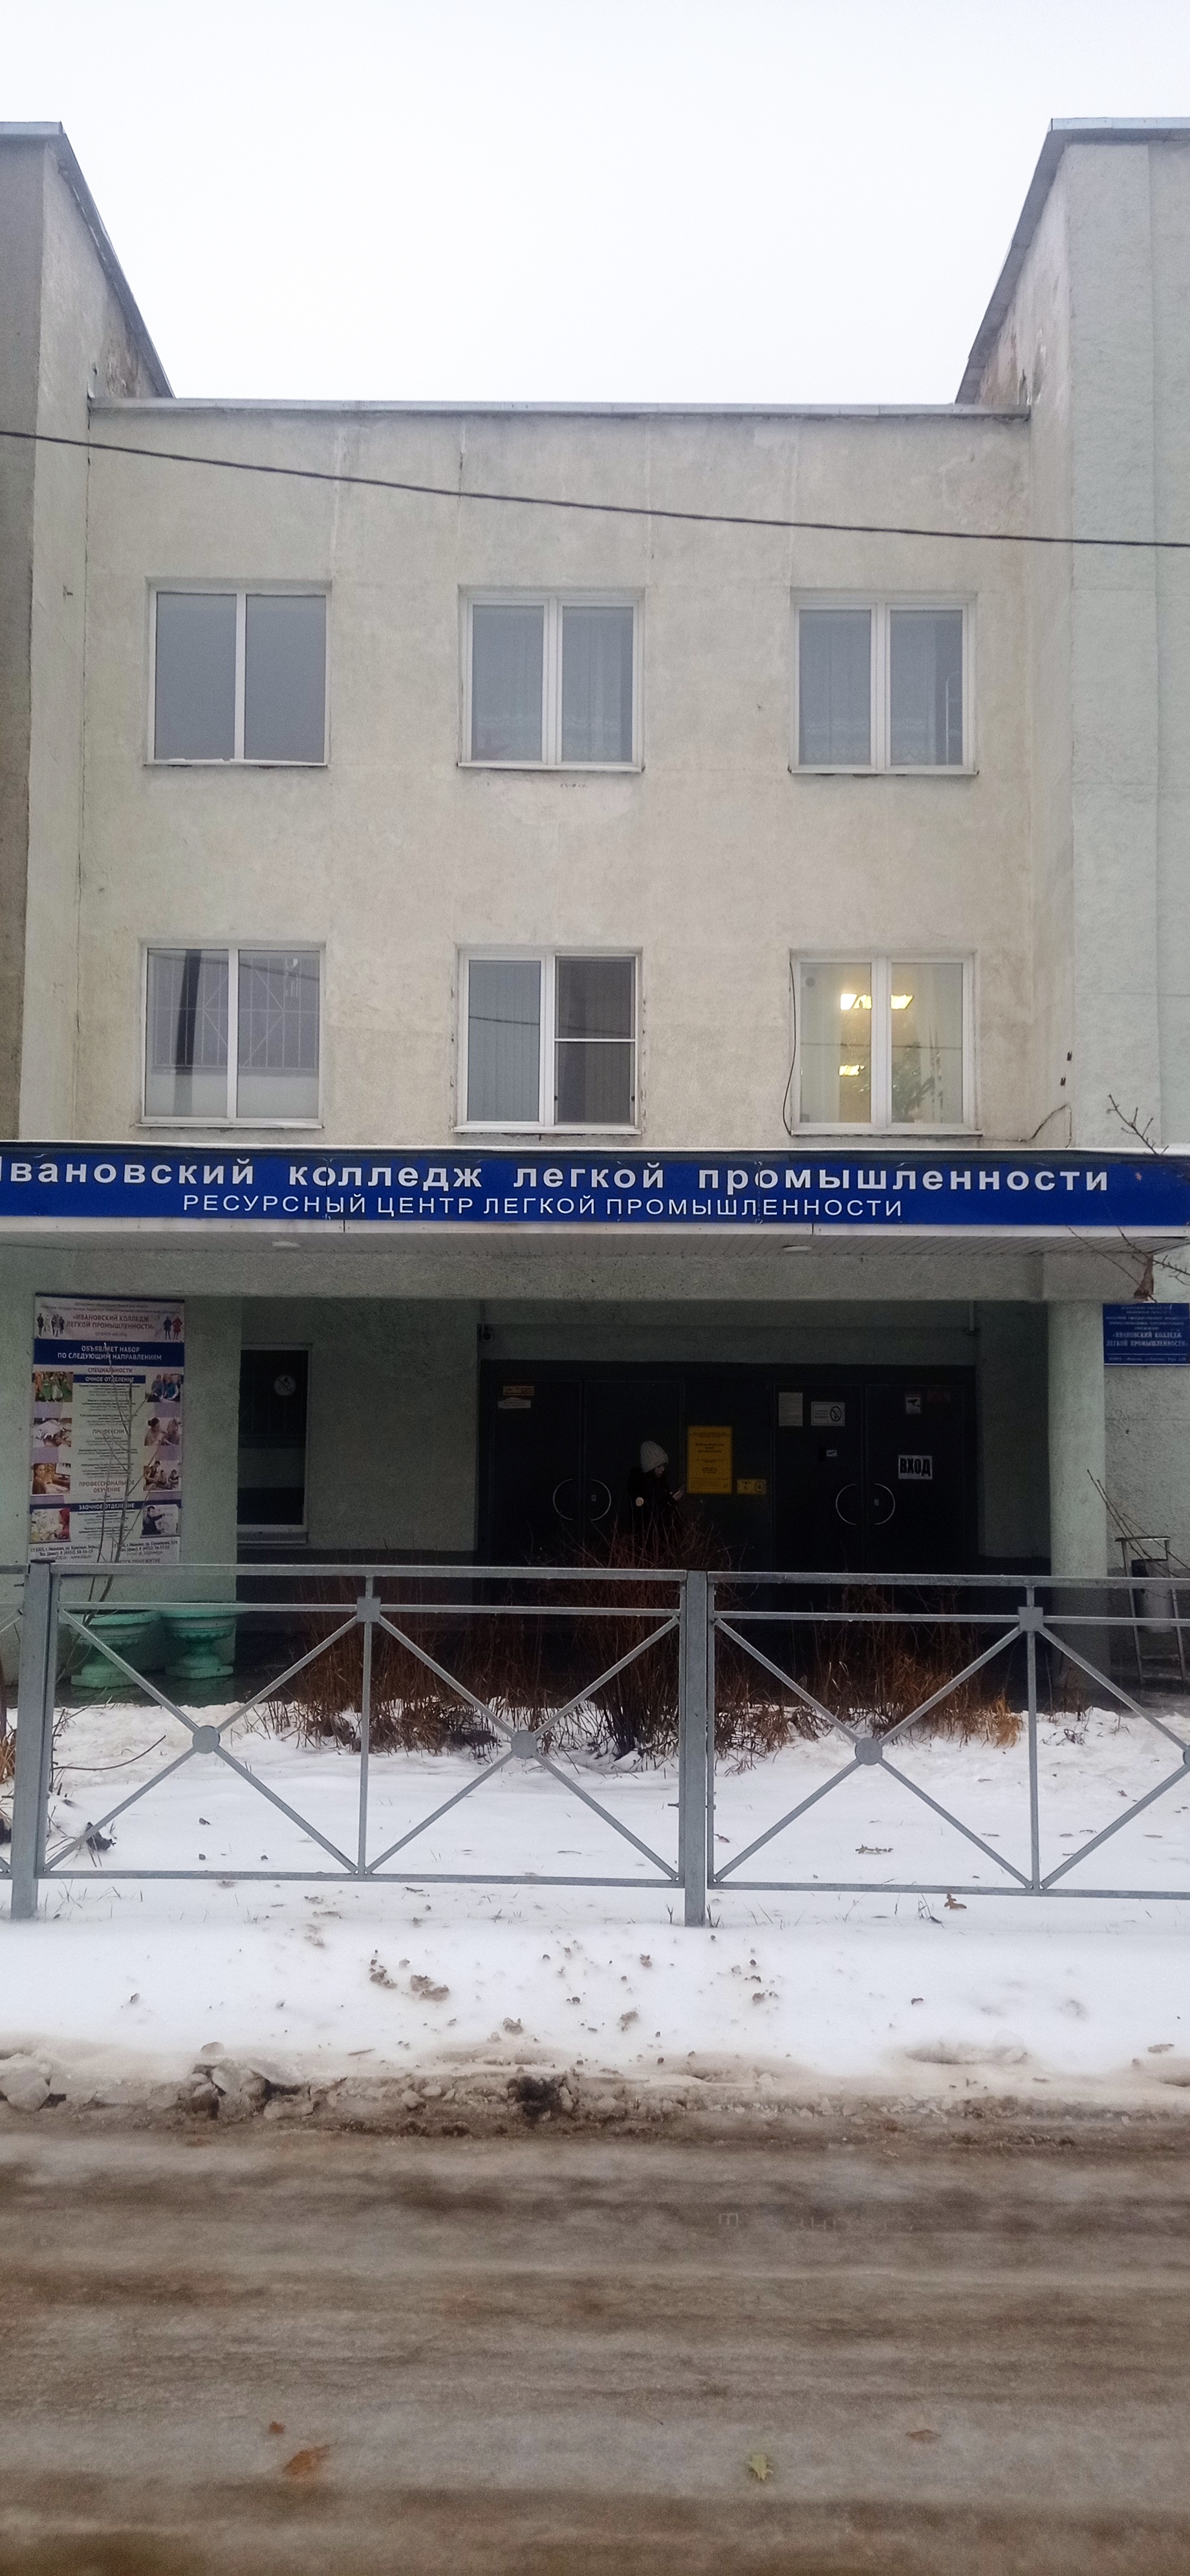 Ивановский колледж легкой промышленности, корпус 1.